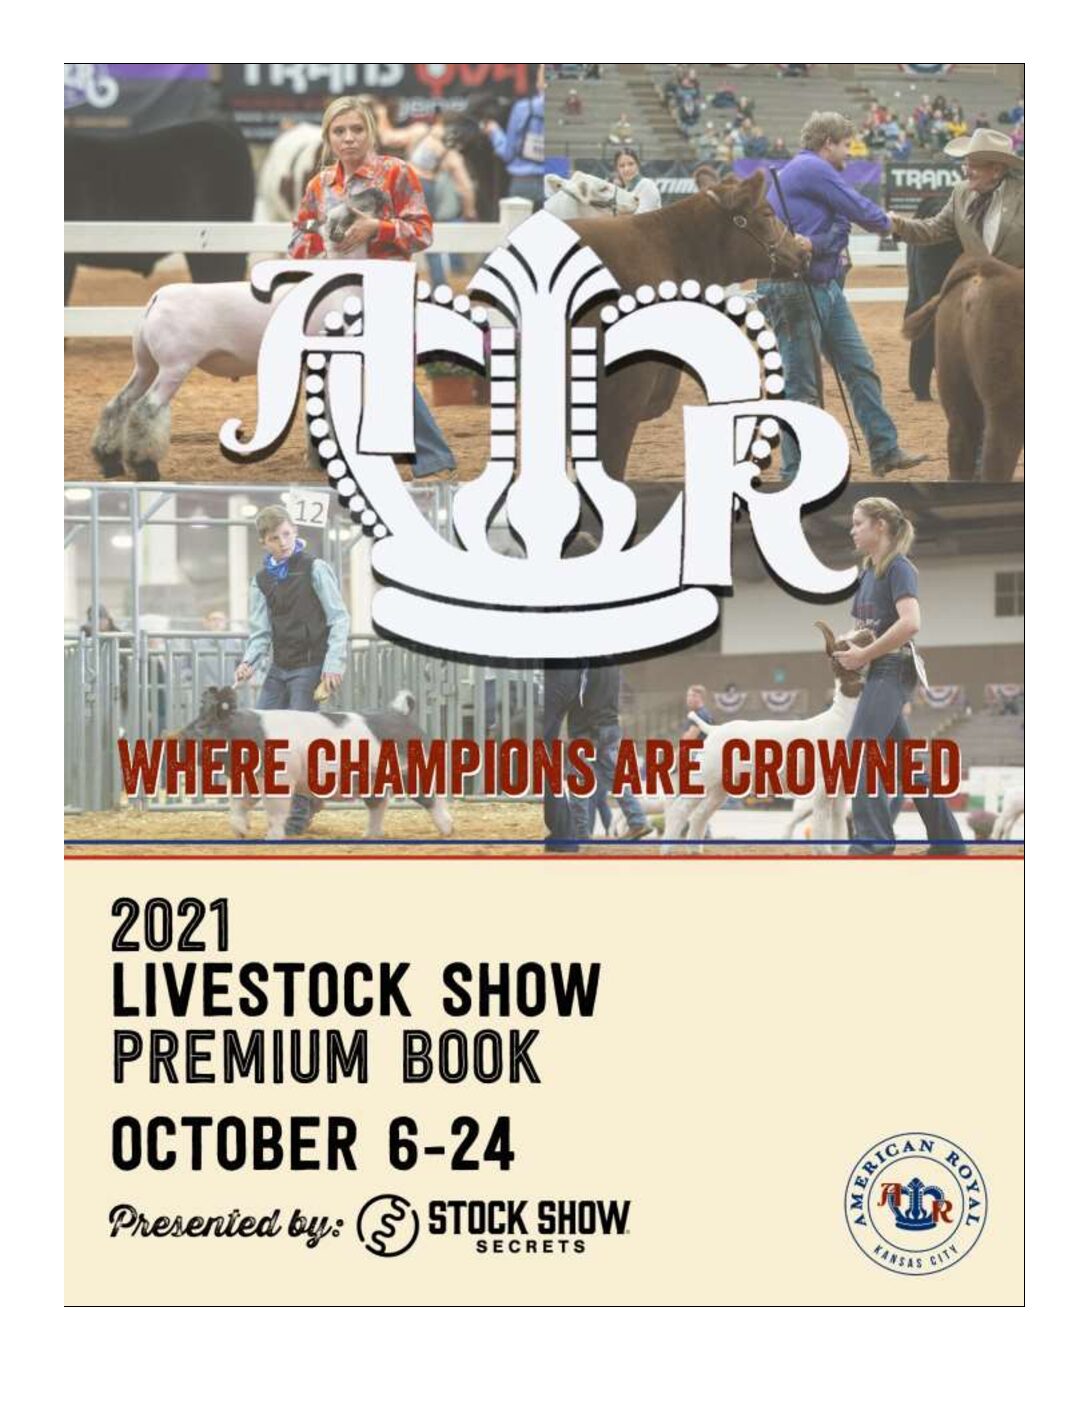 2021 American Royal Livestock Show Premium Book American Royal